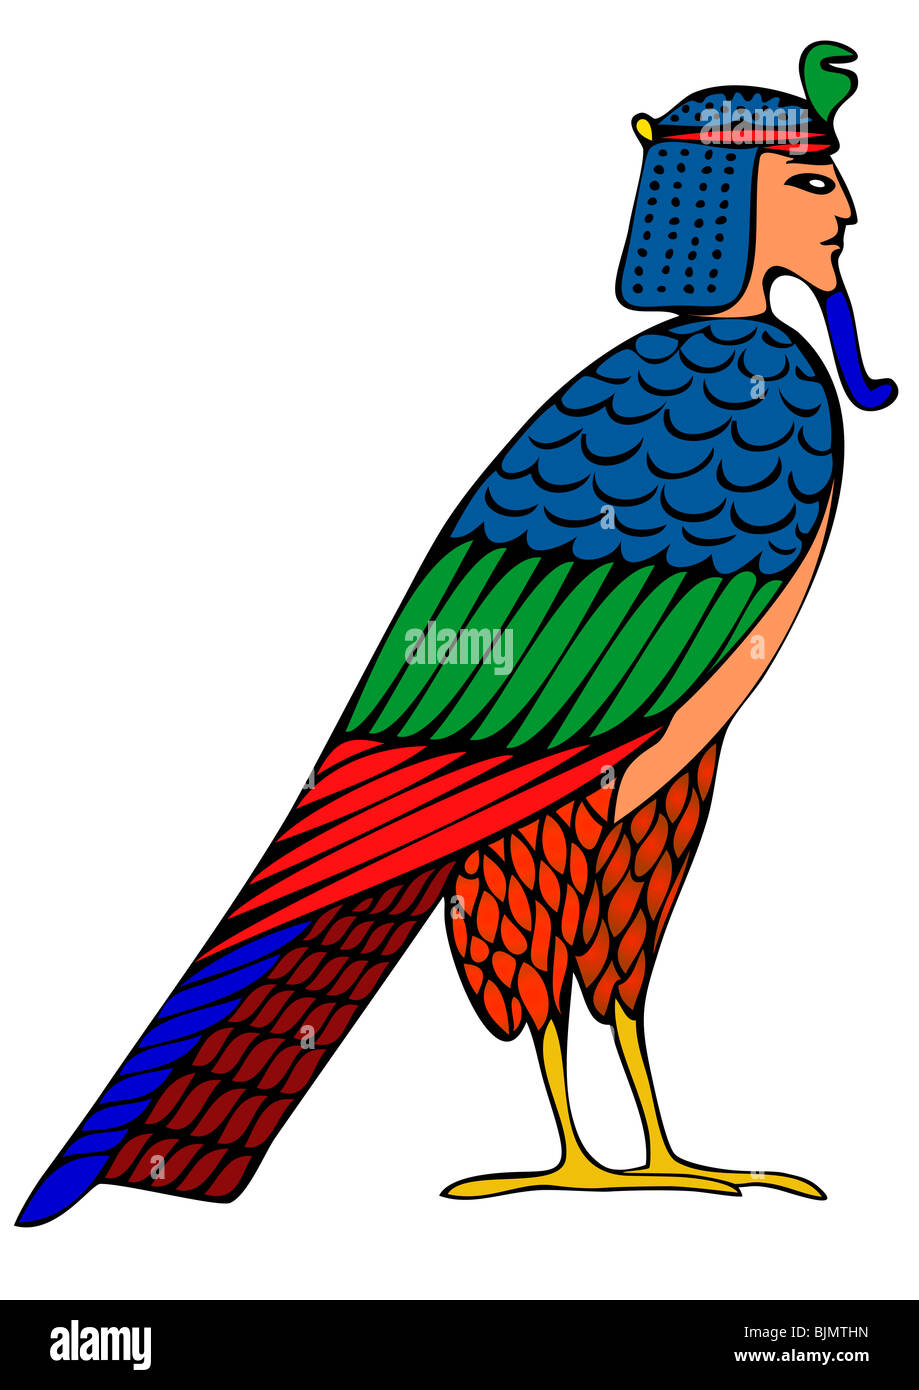 Image de l'oiseau mythologique égyptien - démon d'âmes Banque D'Images